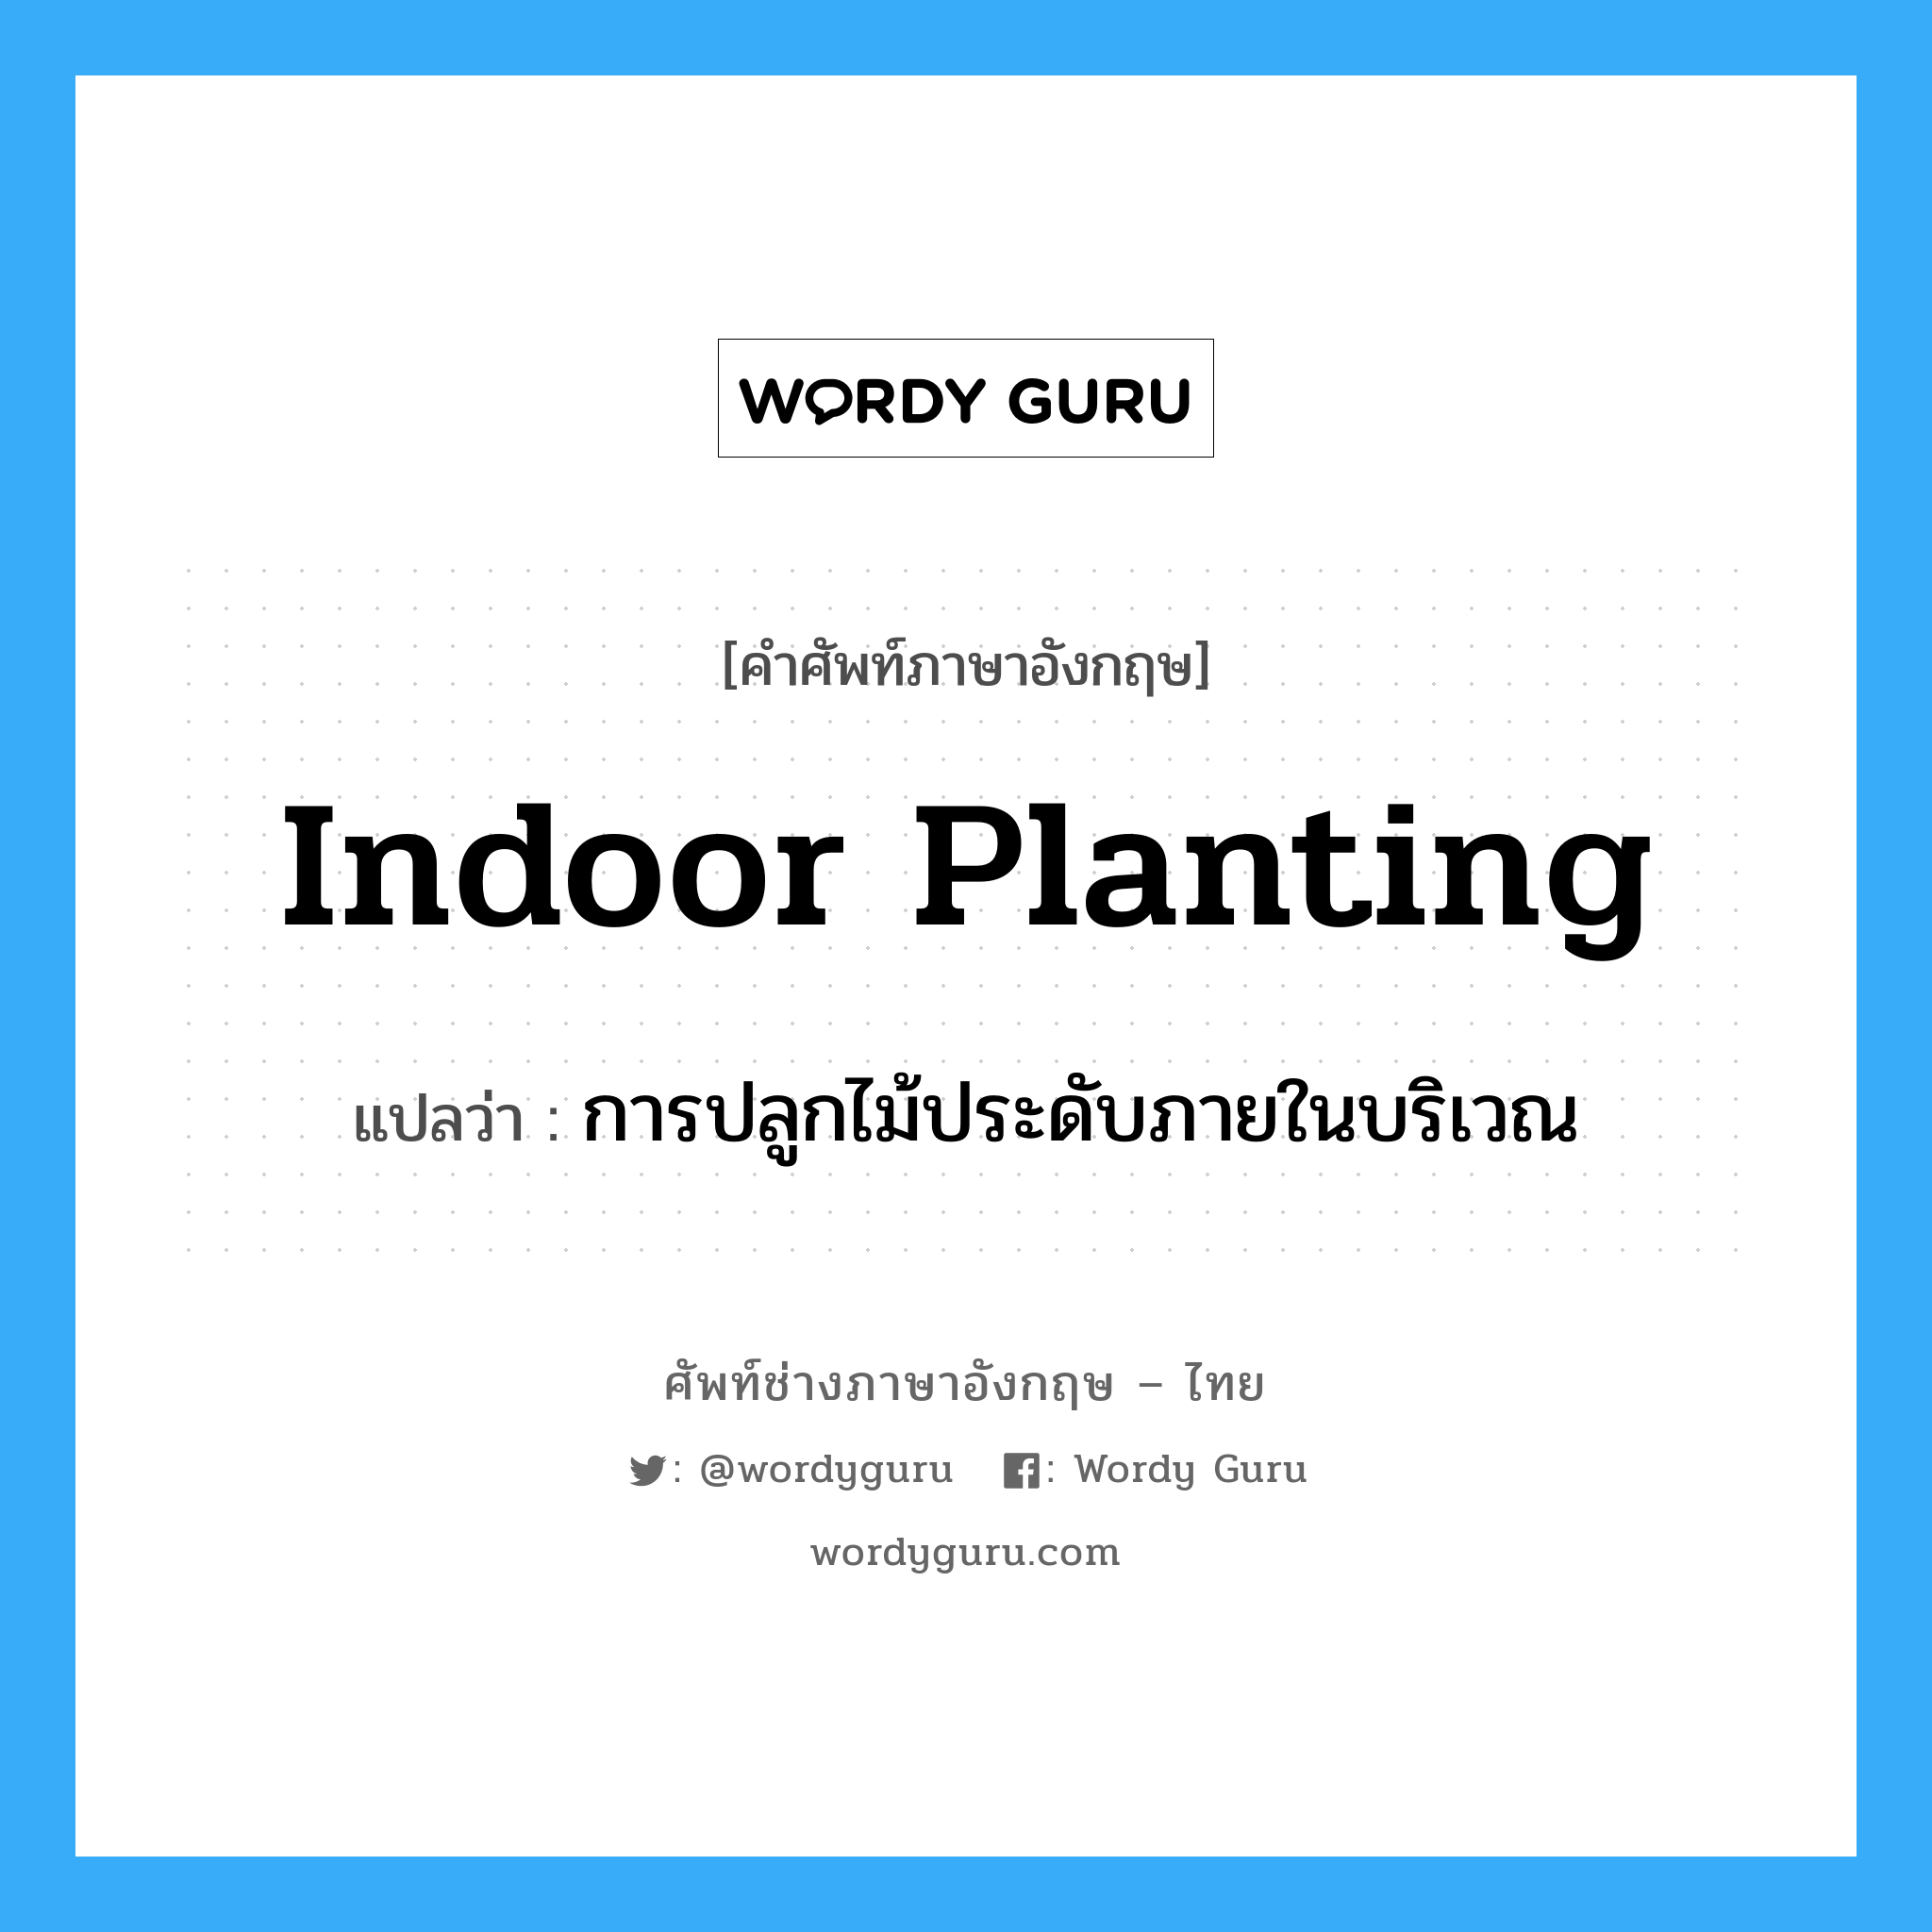 การปลูกไม้ประดับภายในบริเวณ ภาษาอังกฤษ?, คำศัพท์ช่างภาษาอังกฤษ - ไทย การปลูกไม้ประดับภายในบริเวณ คำศัพท์ภาษาอังกฤษ การปลูกไม้ประดับภายในบริเวณ แปลว่า indoor planting